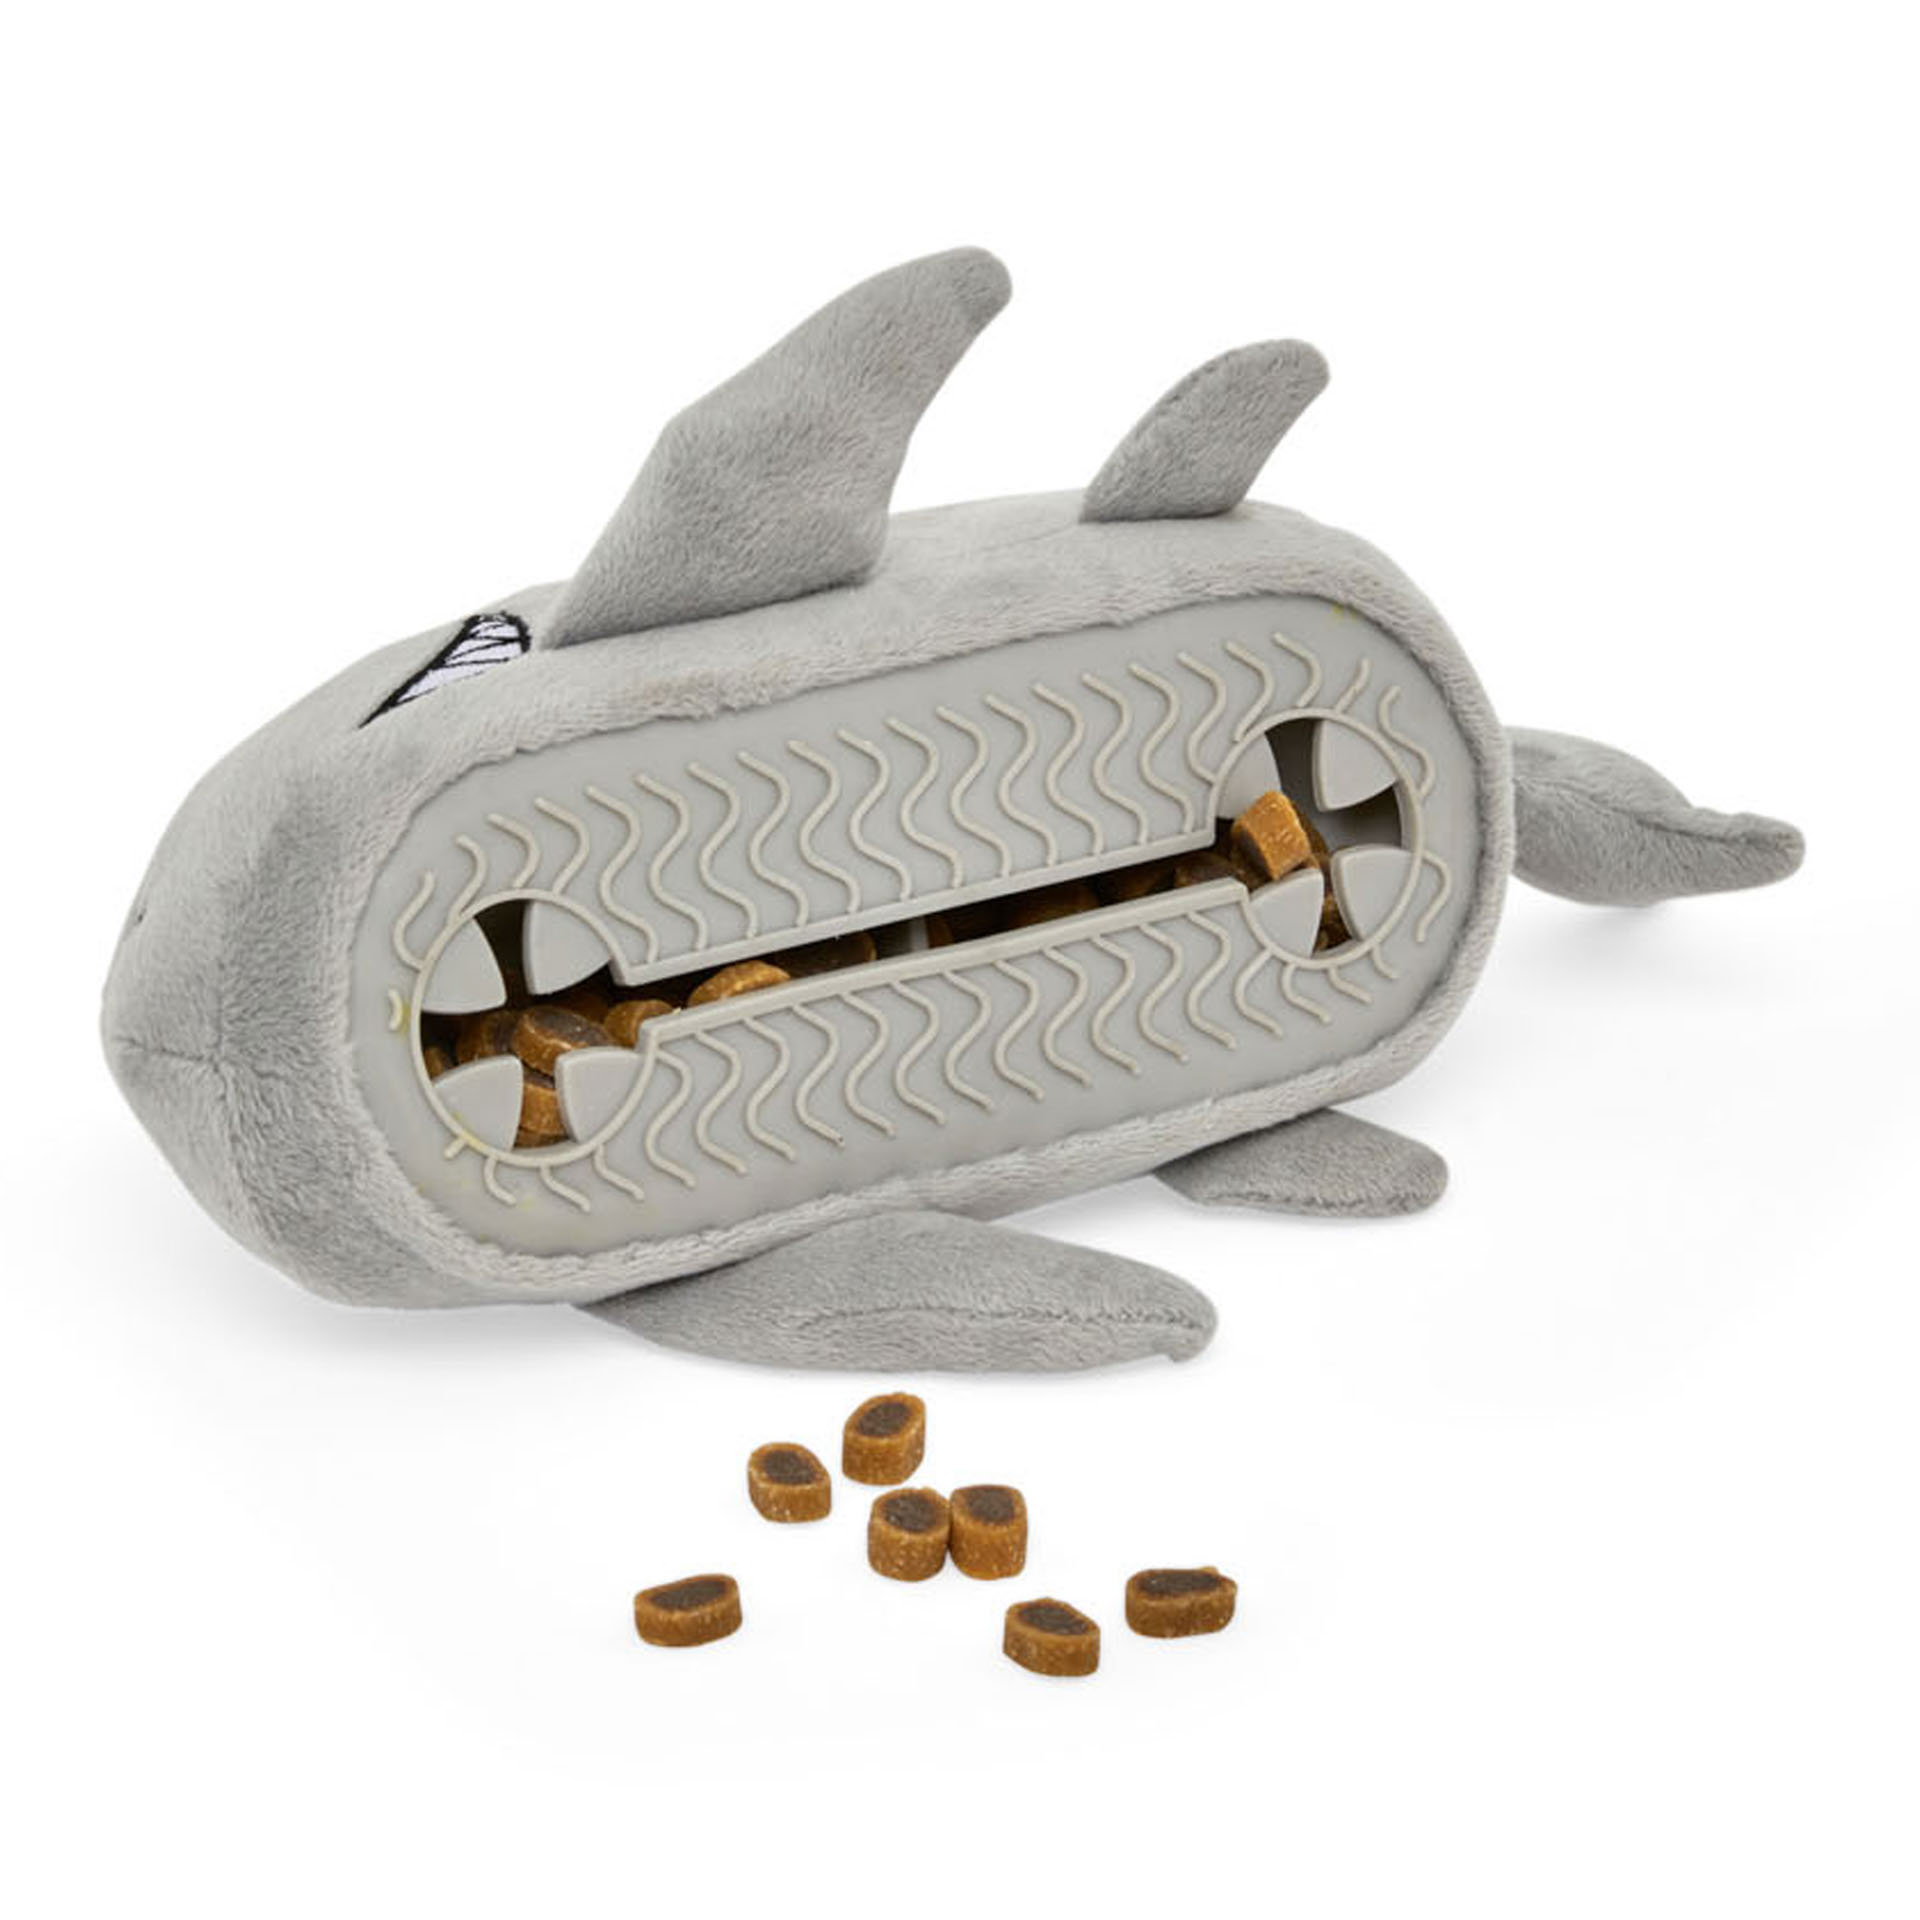 Gioco peluche dispensa crocchette per cani, squalo grigio, grigio, large